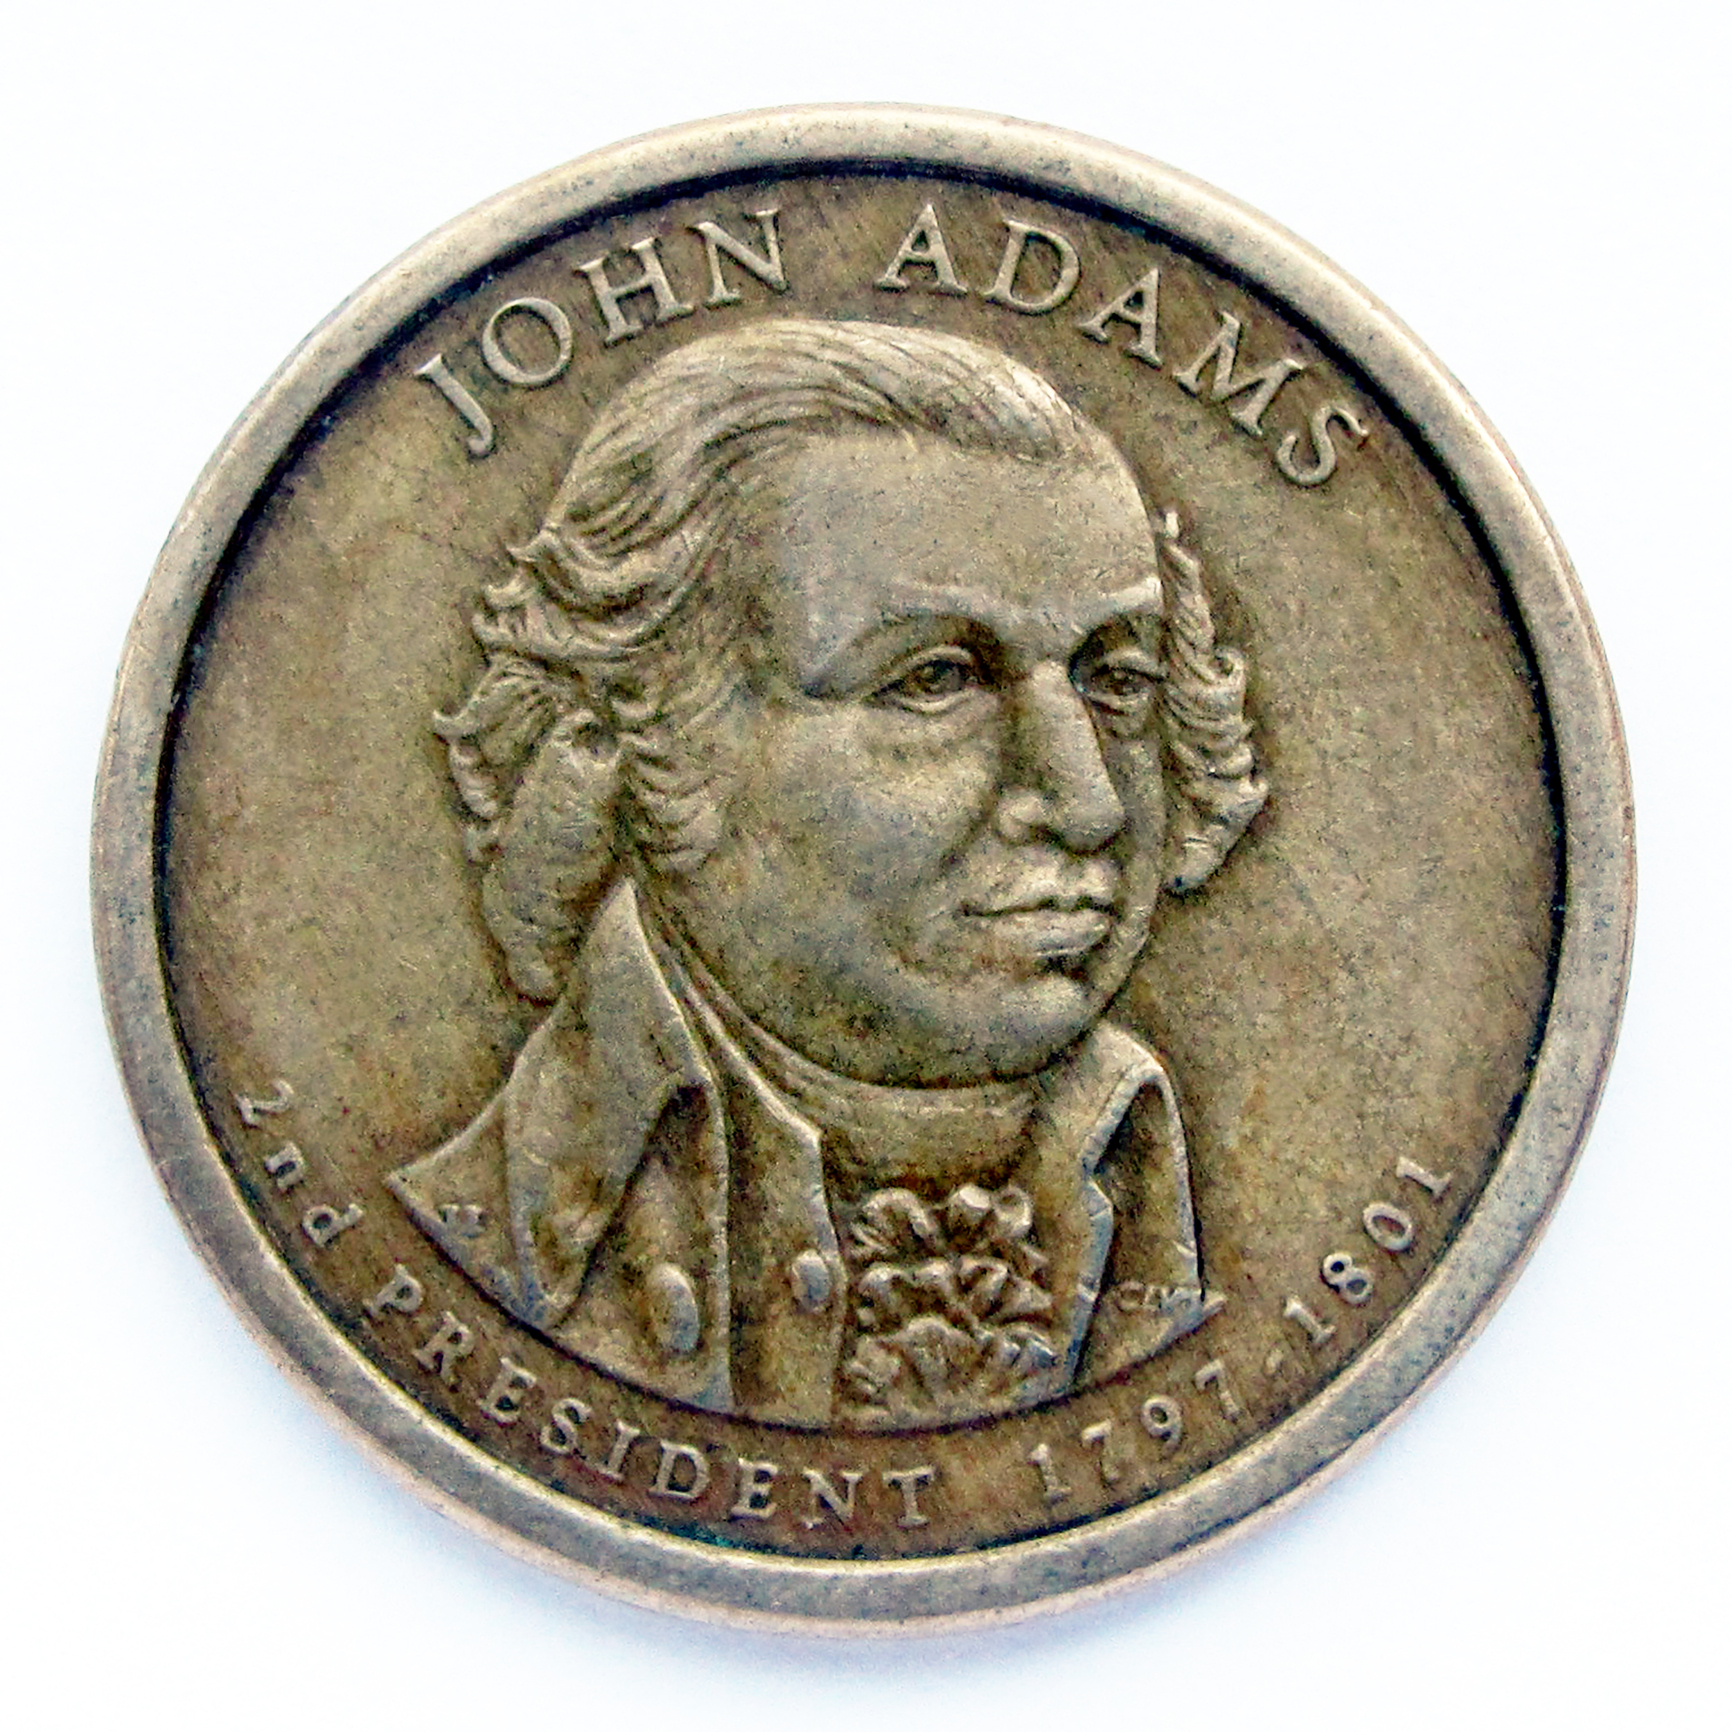 Monedă veche de 1 dolar din Statele Unite. Moneda prezintă un portret al lui John Adams, al doilea președinte al SUA, unul dintre părinții fondatori ai Statelor Unite. (sursă foto: dreamstime.com)